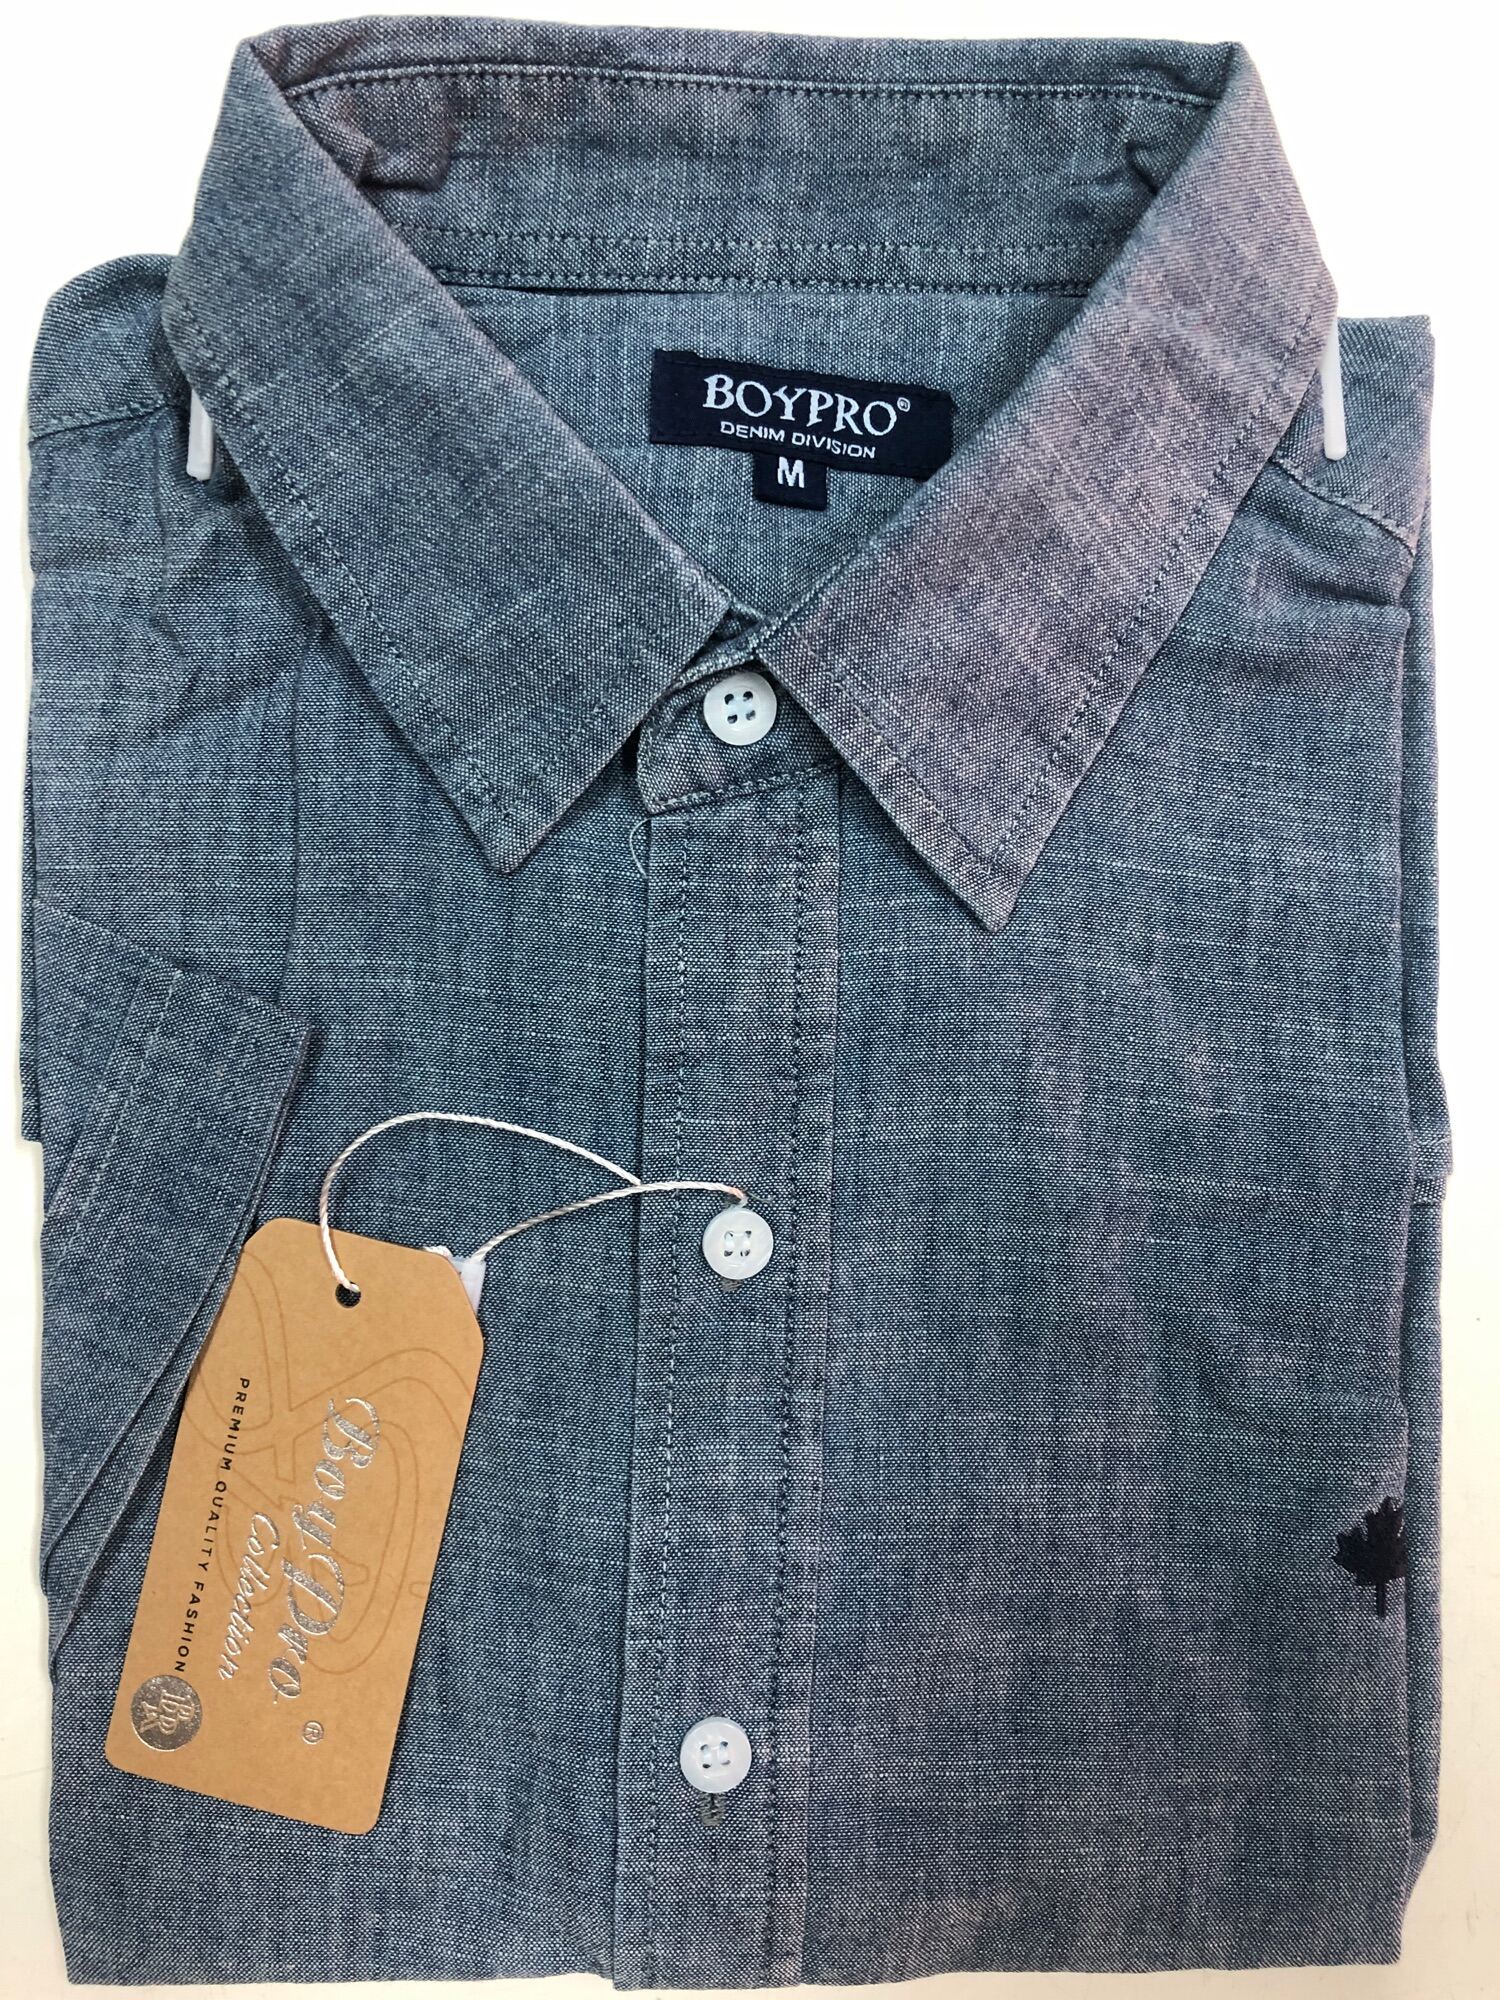 Áo Sơ Mi Tay Ngắn Cotton Jeans Màu Xanh FO012 GIẢM 10% GIÁ TRỊ ĐƠN HÀNG thumbnail